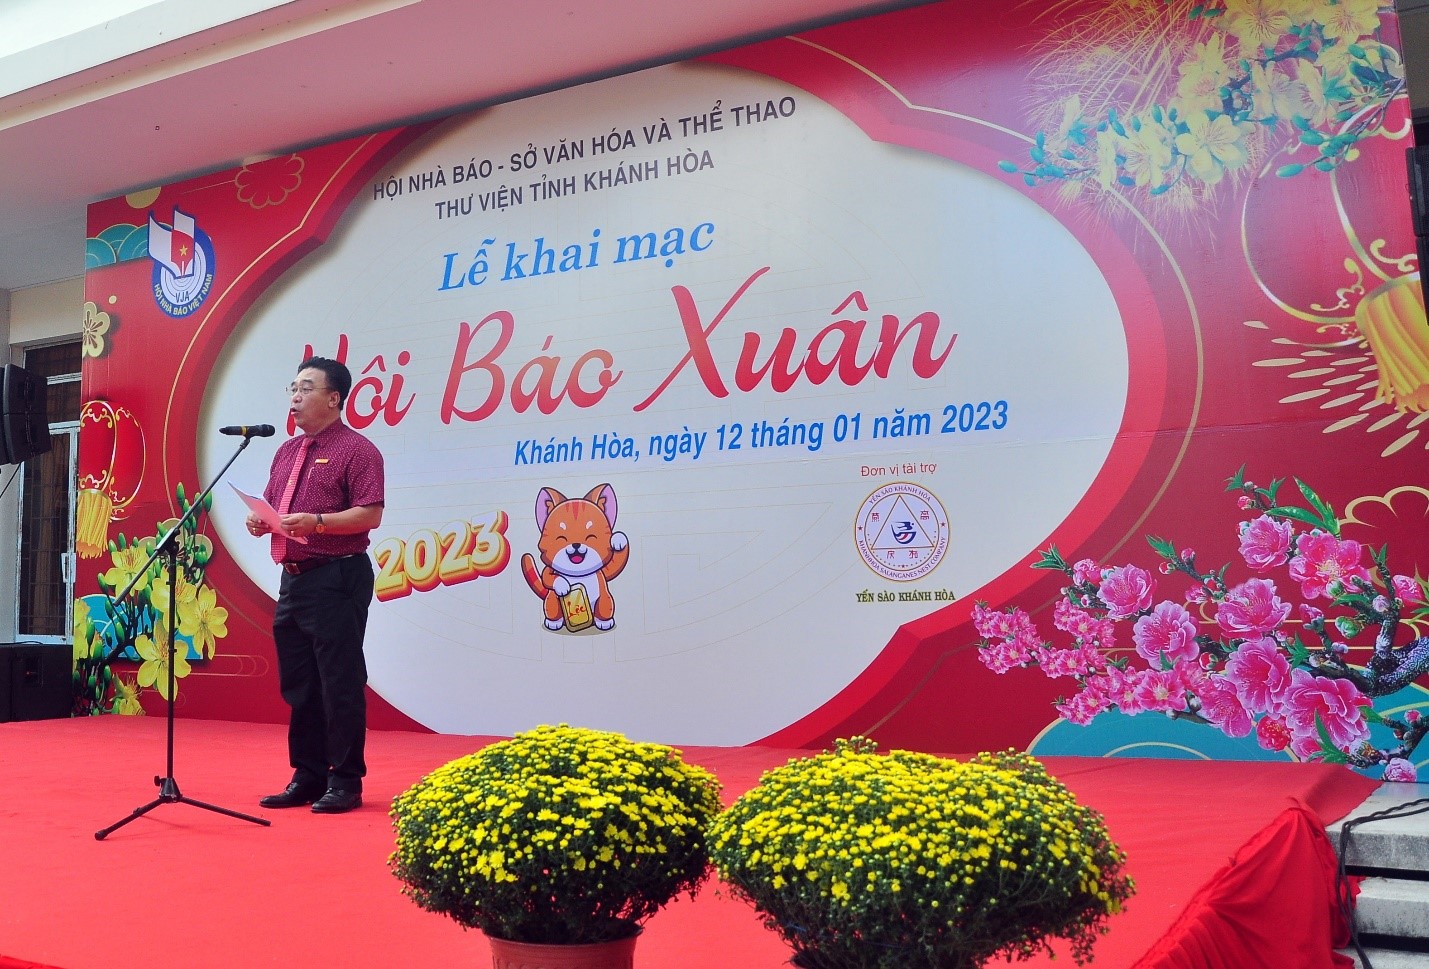 Ông Đoàn Minh Long, UV BCH Hội Nhà Báo Việt Nam, Chủ tịch Hội Nhà Báo Khánh Hòa báo cáo tại Hội Báo Xuân